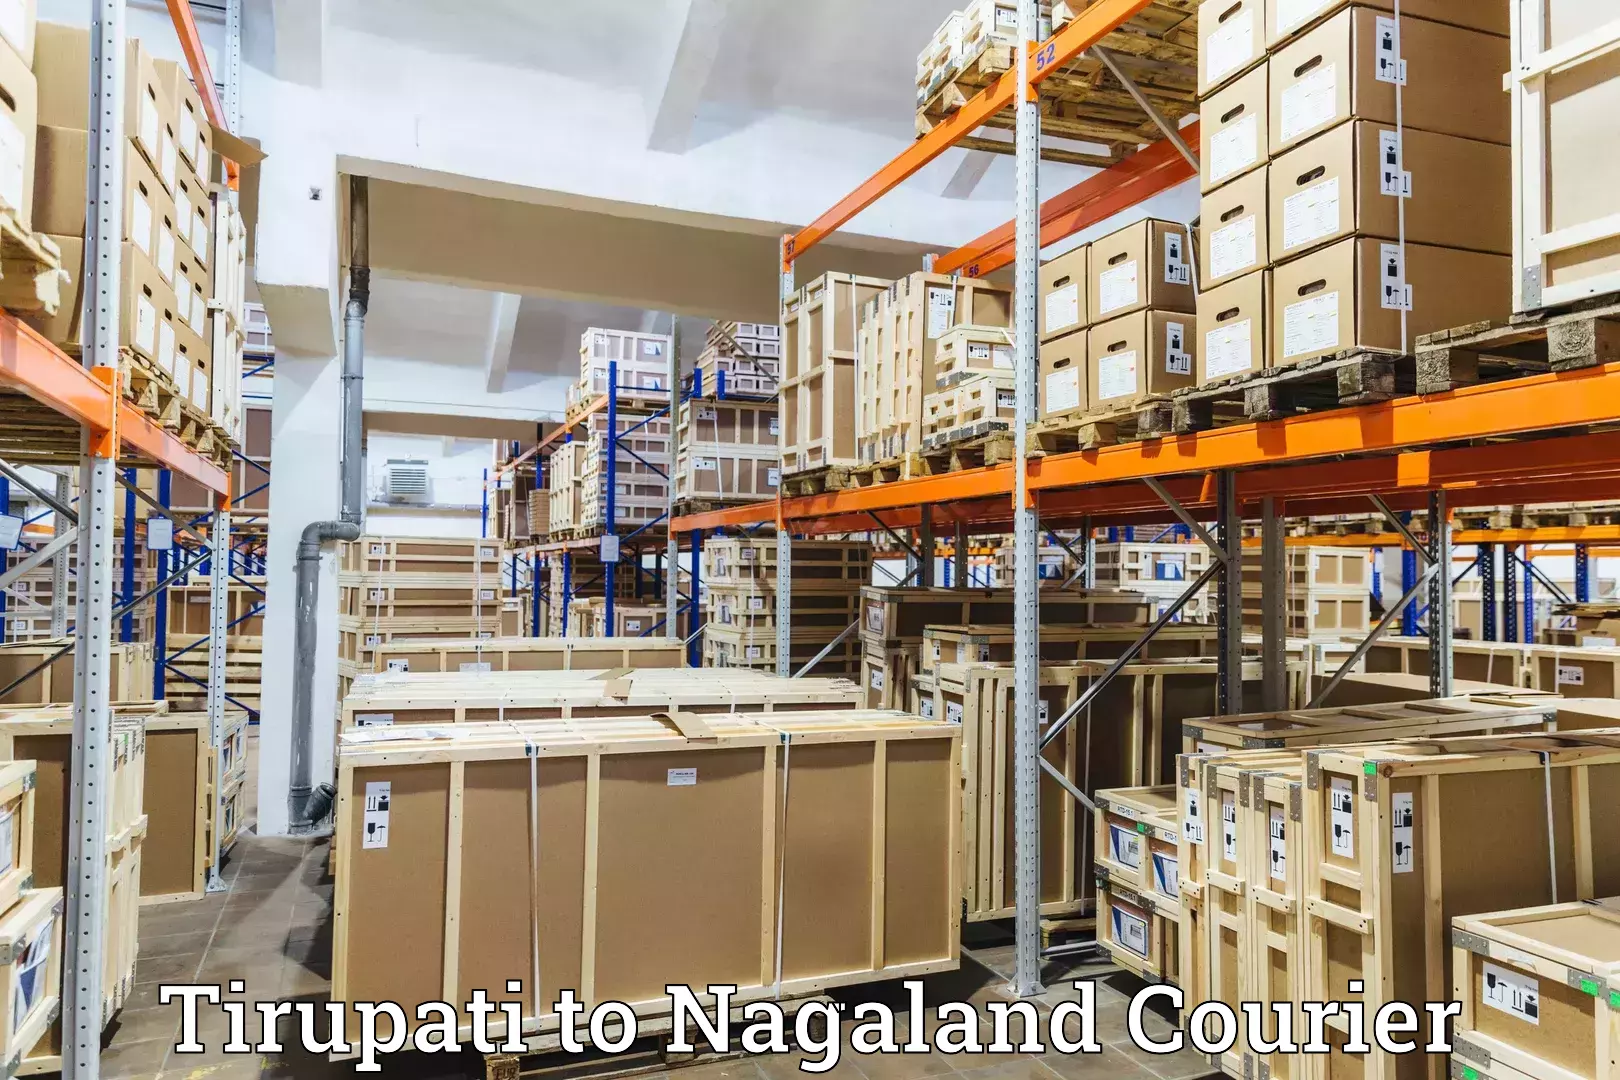 Customer-centric shipping Tirupati to Wokha